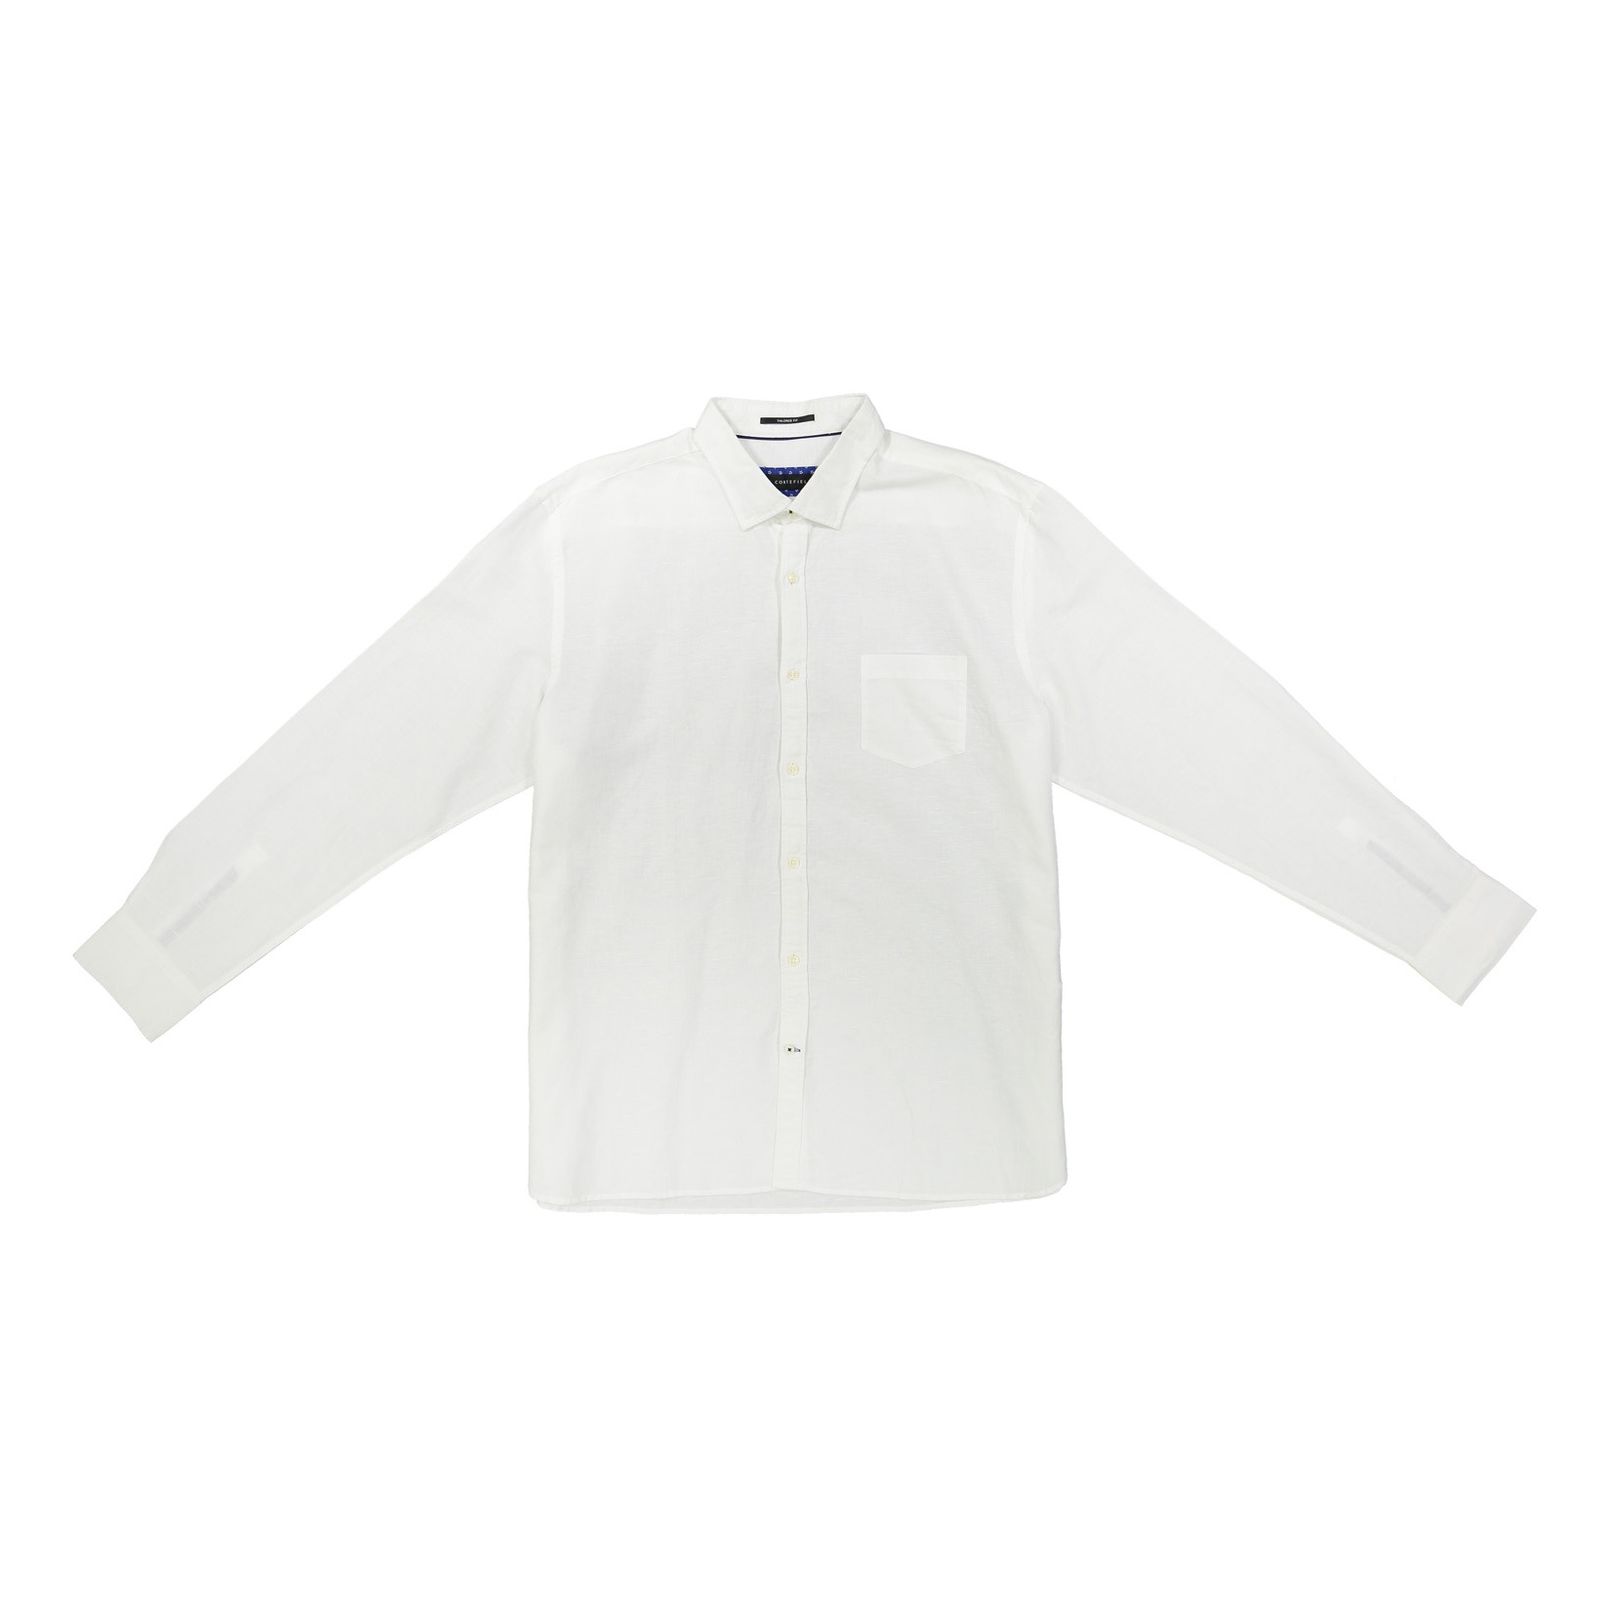 پیراهن مردانه کورتفیل مدل 2219085-99 - سفید - 2